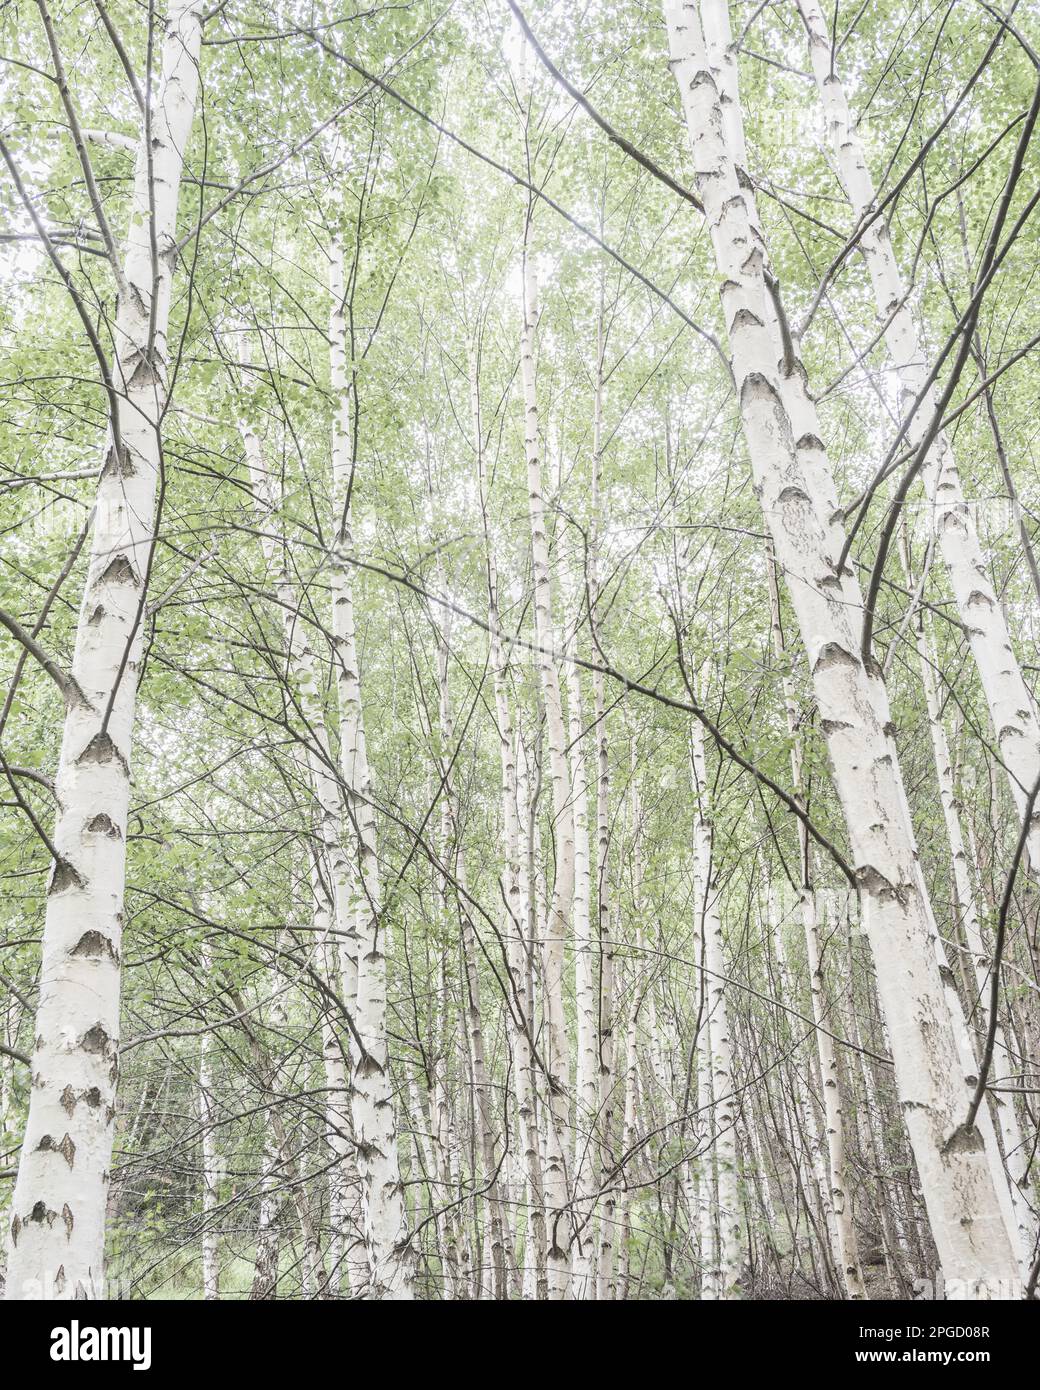 Une vue à angle bas d'un tronc de bouleau dans une forêt d'été tranquille, mettant en valeur la beauté et la croissance de la nature. Banque D'Images